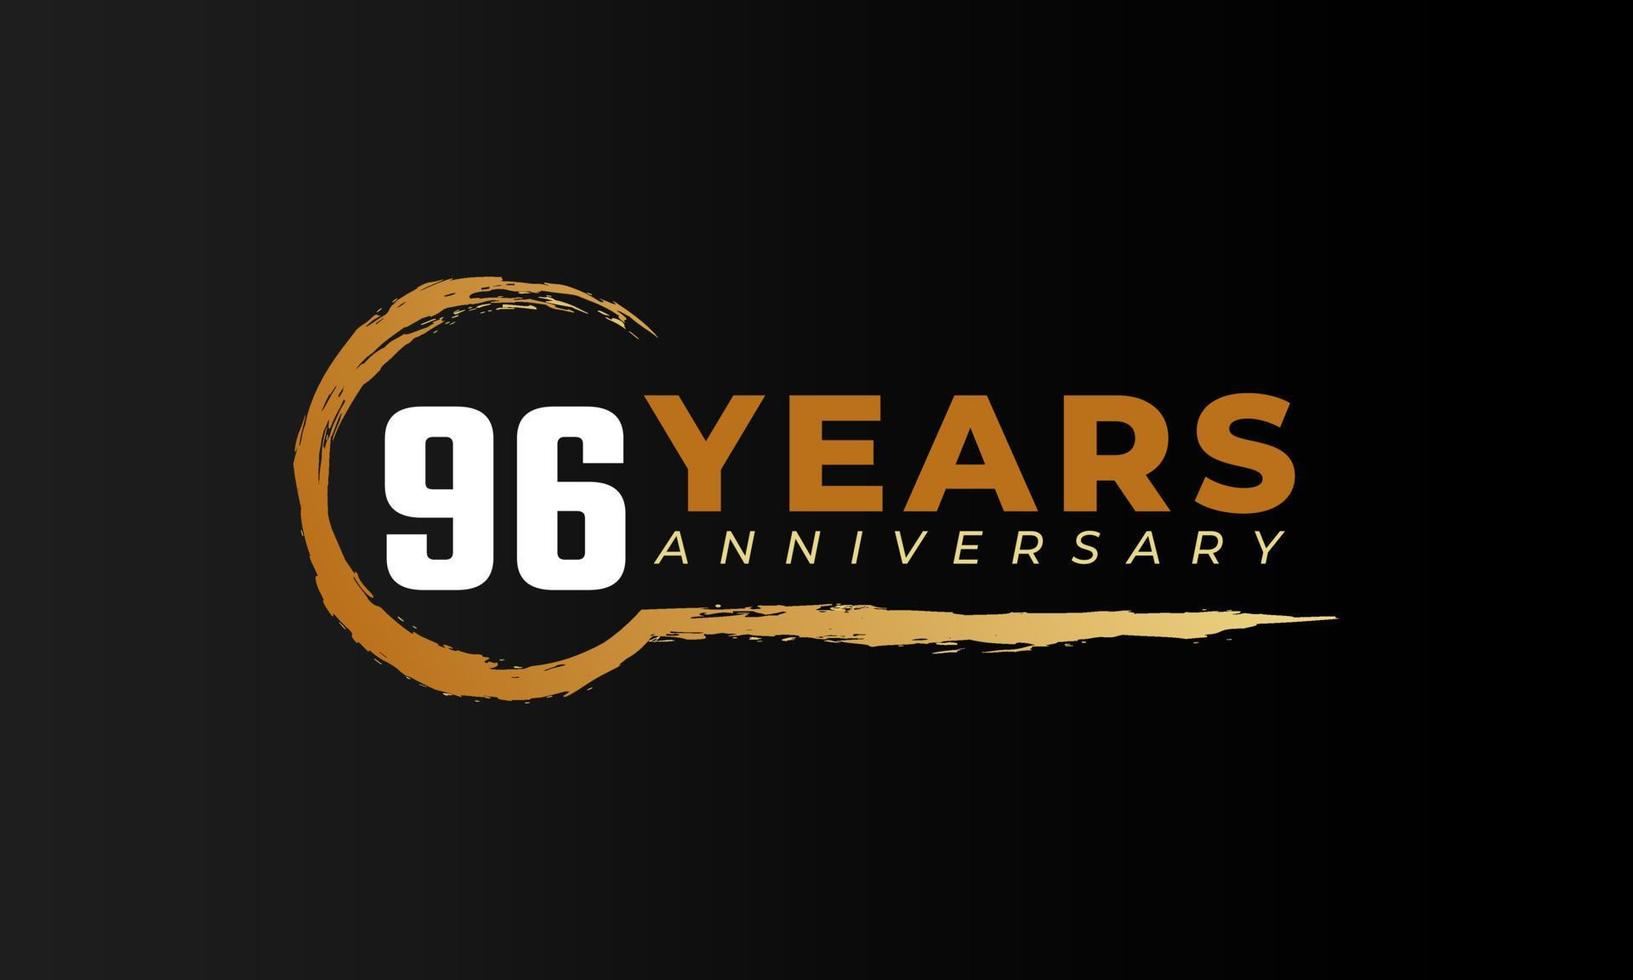 96-jarig jubileumfeest met cirkelborstel in gouden kleur. gelukkige verjaardag groet viert gebeurtenis geïsoleerd op zwarte achtergrond vector